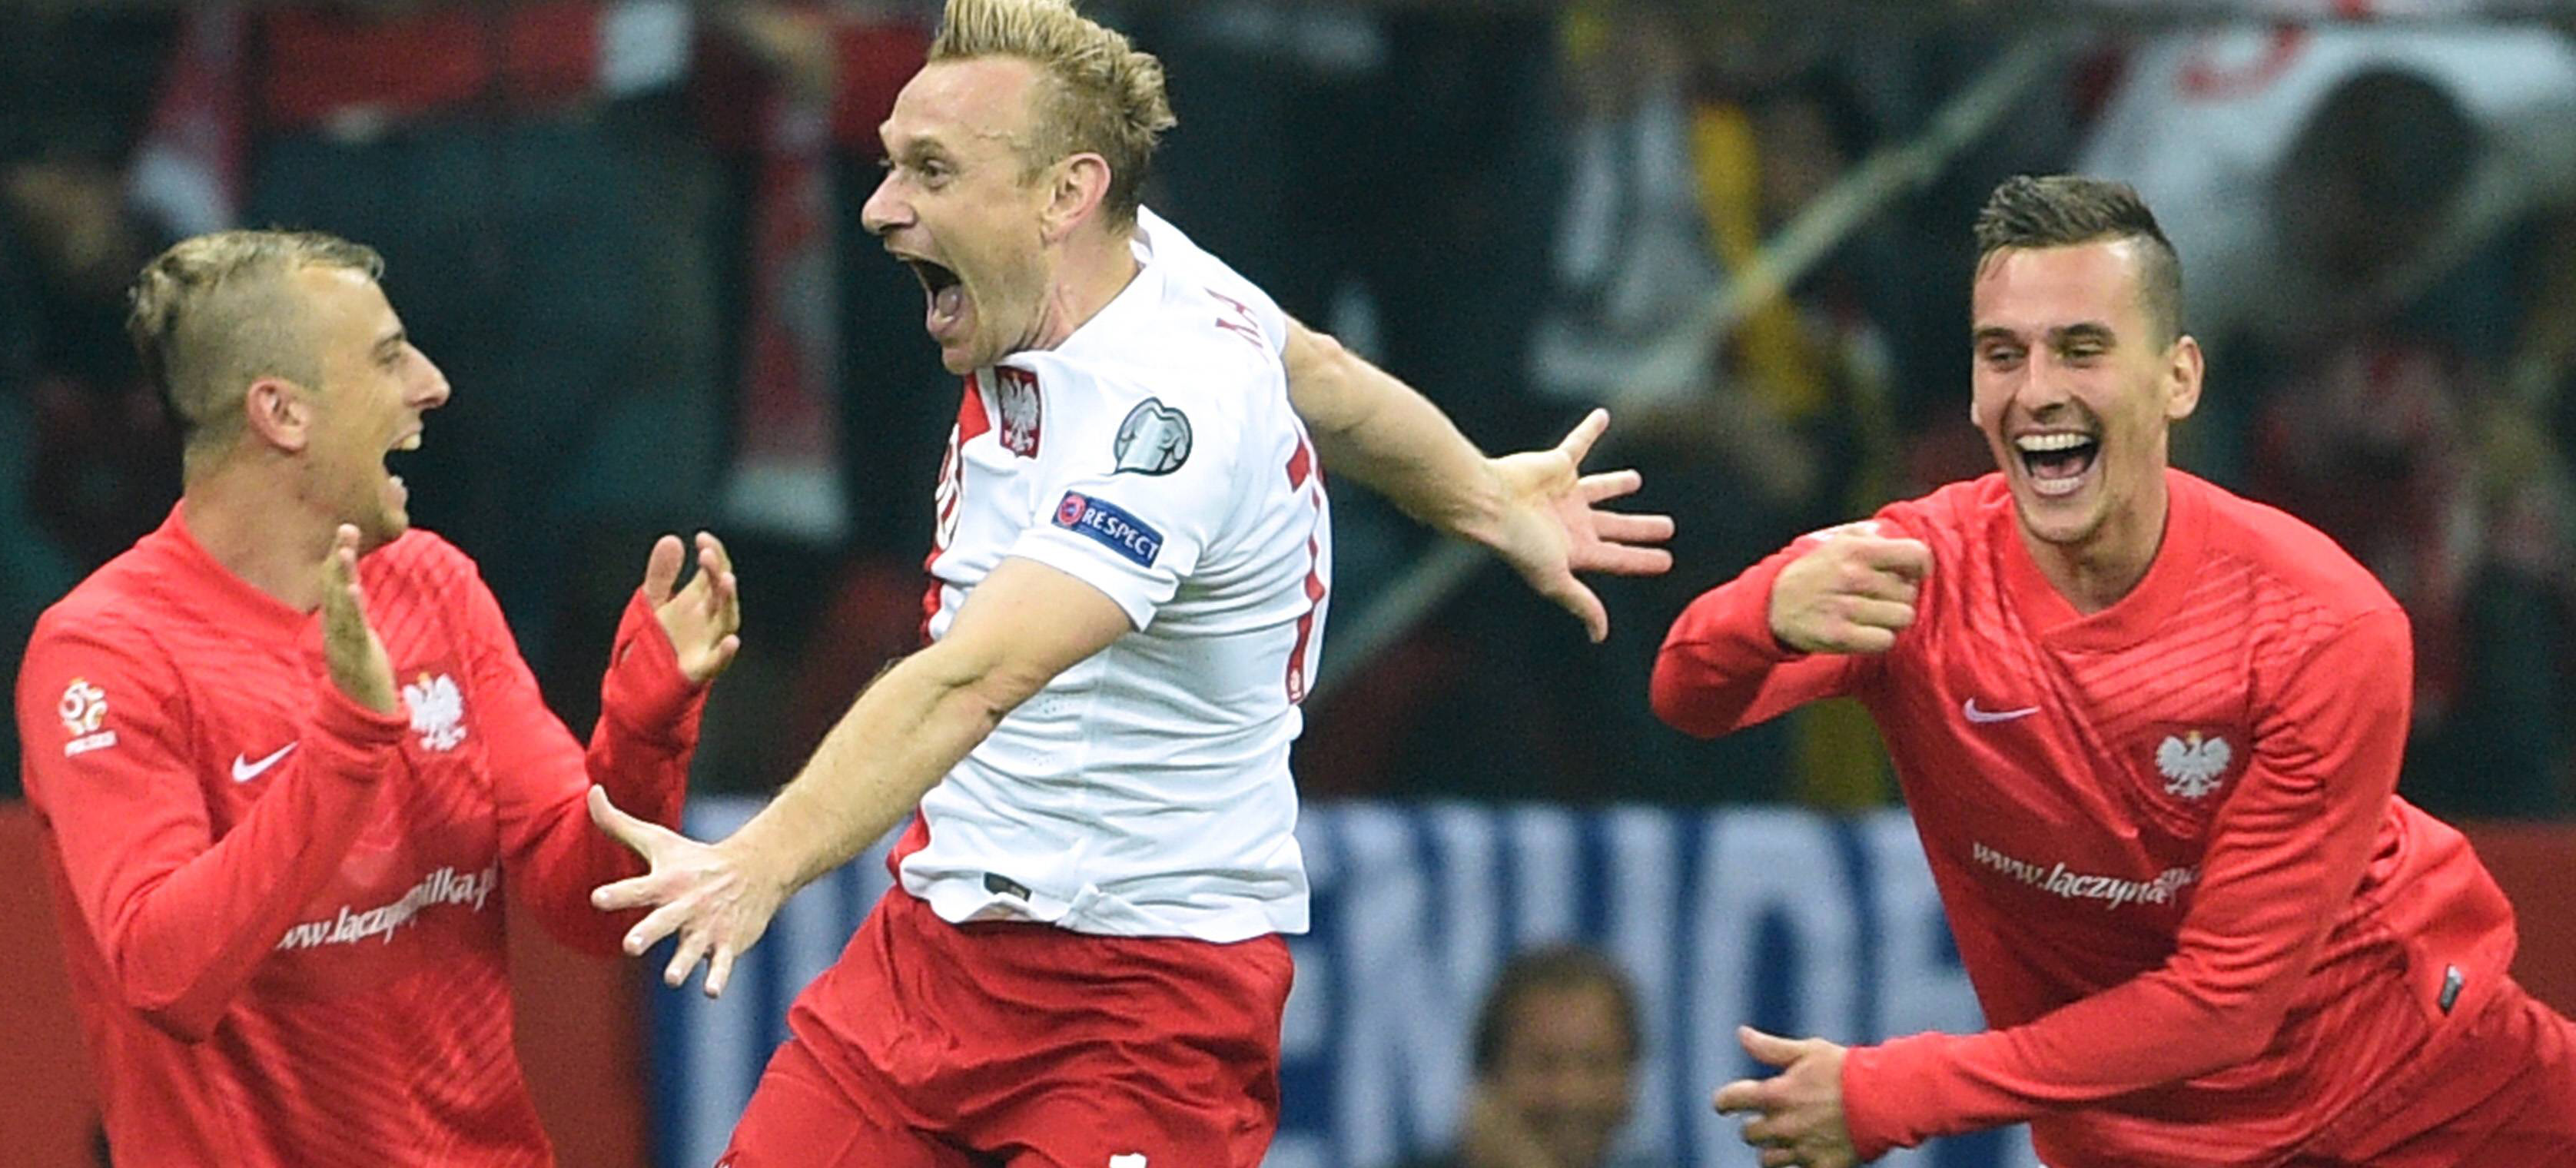 Polen en Duitsland treffen elkaar vrijdag in Frankfurt, het heenduel eindigde in een 2-0 overwinning voor de thuisploeg.